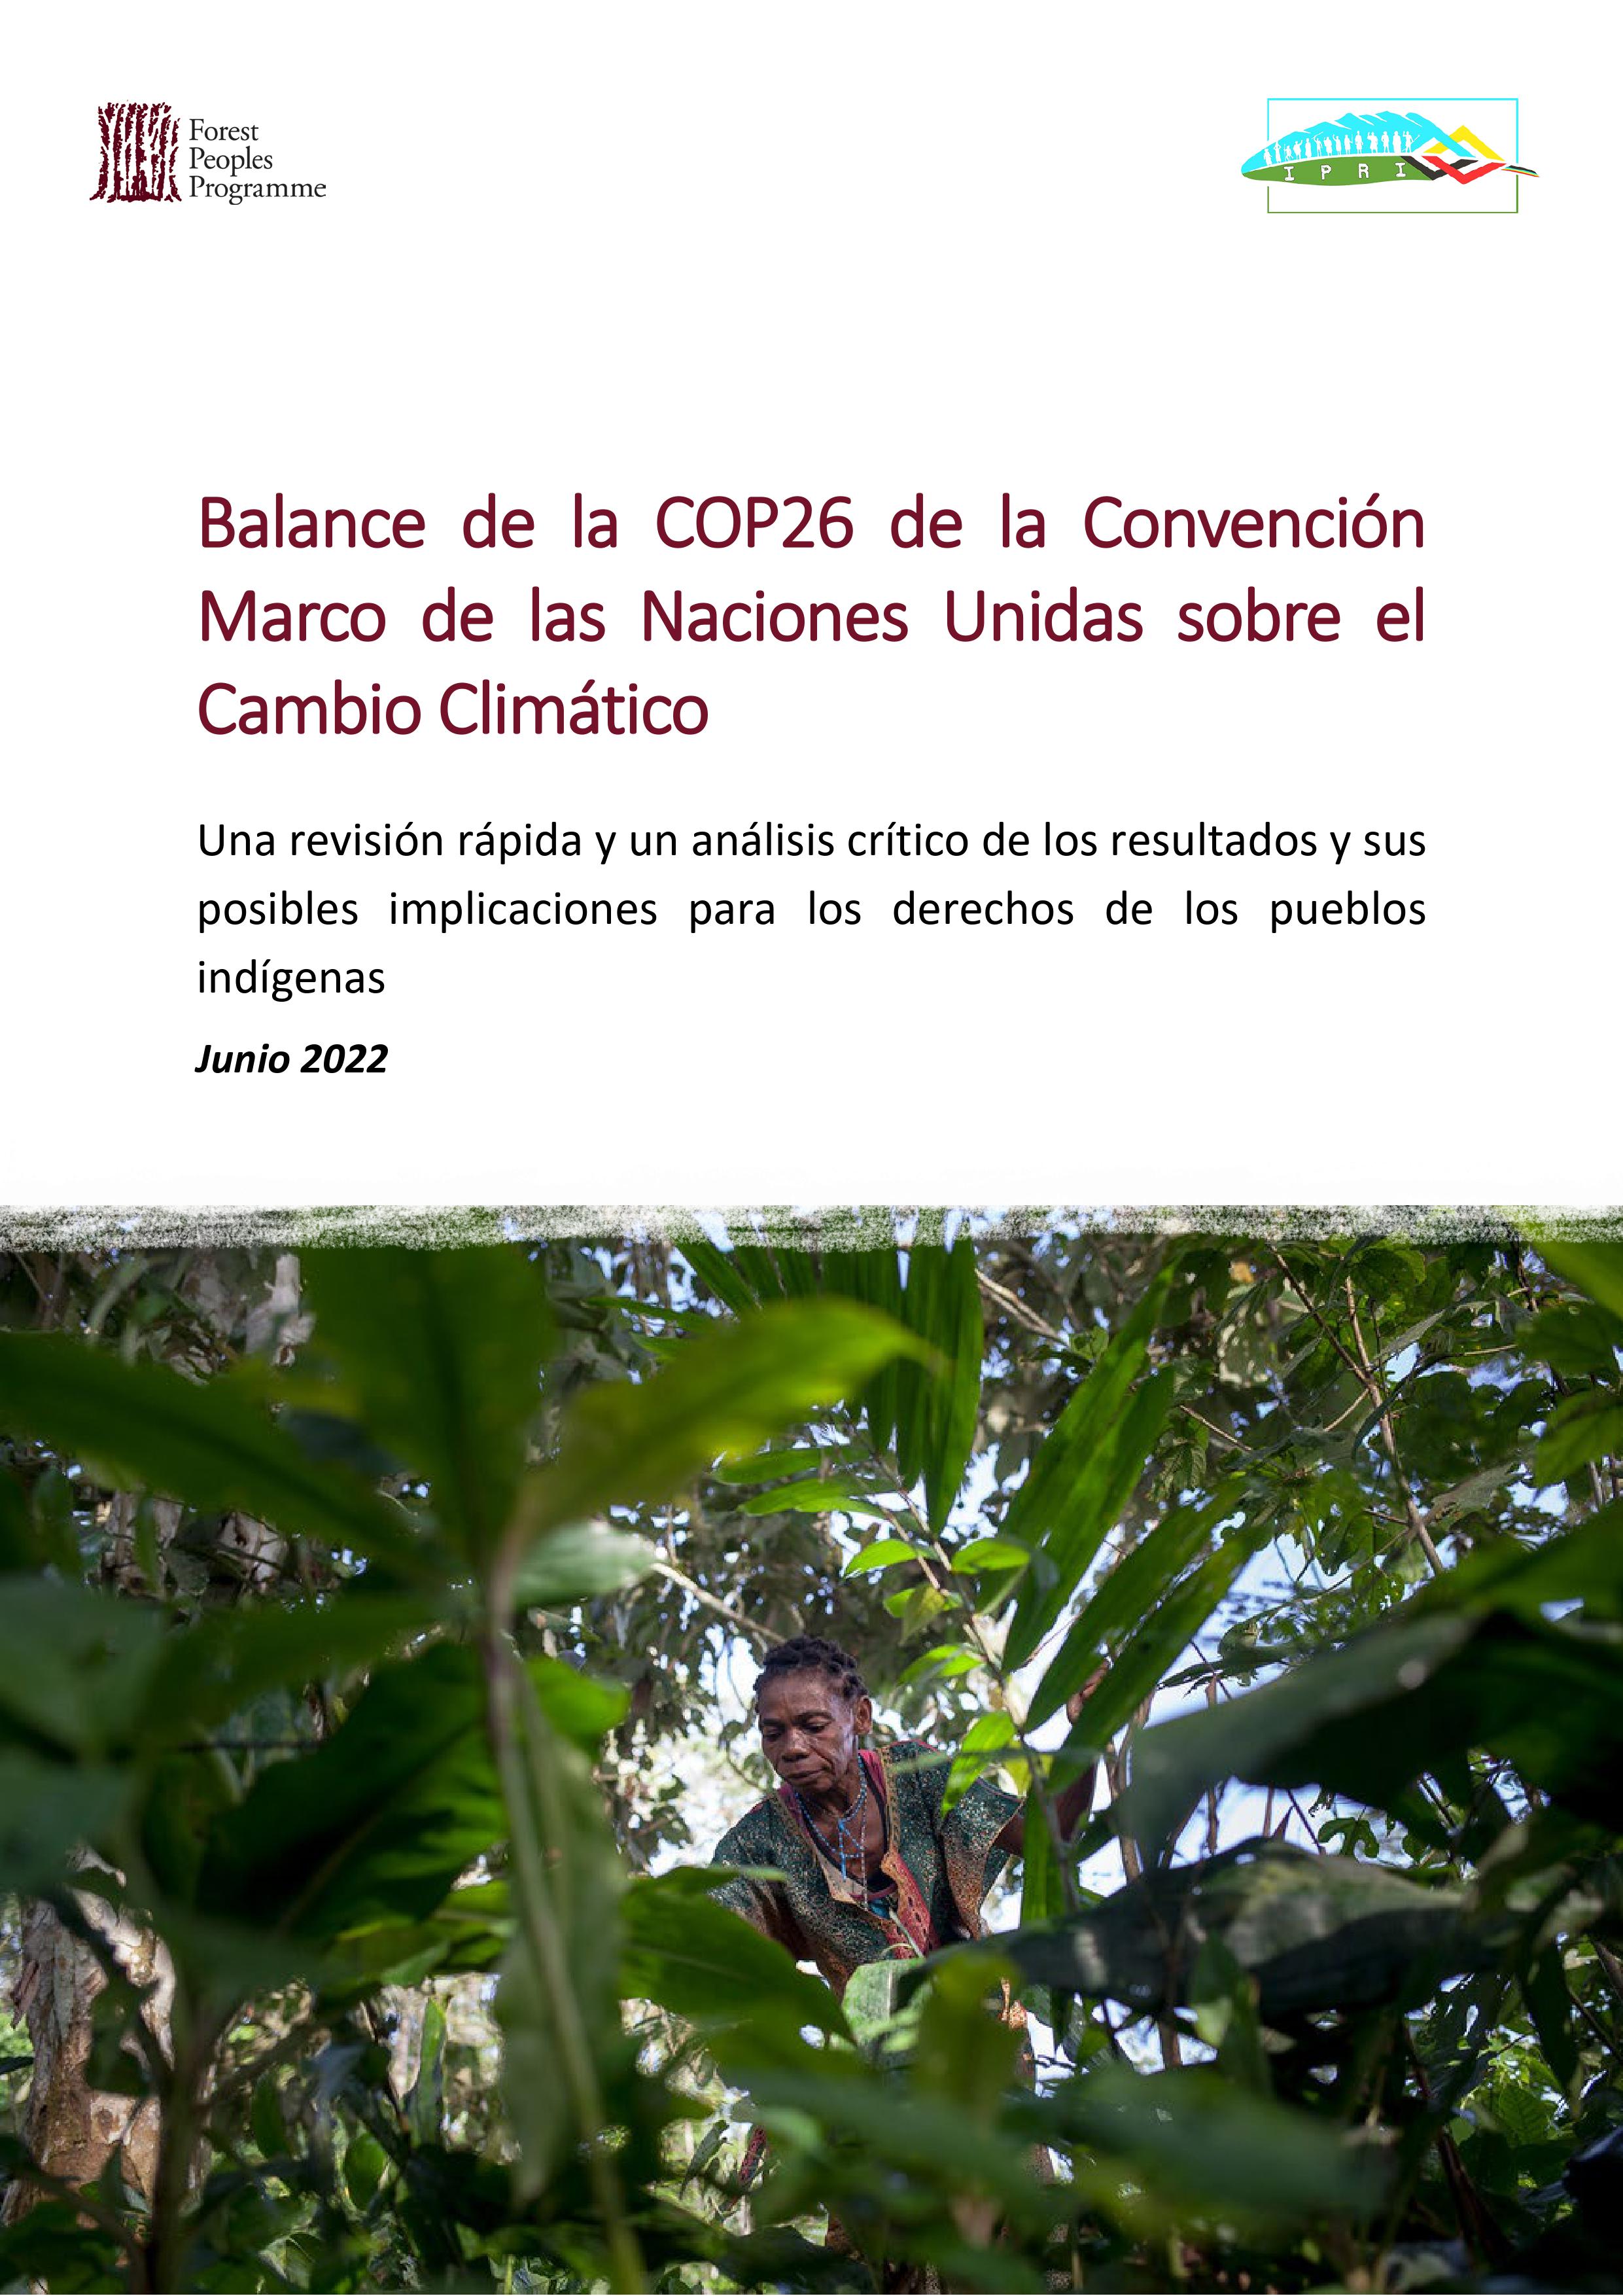 Balance de la COP26 de la Convención Marco de las Naciones Unidas sobre el Cambio Climático